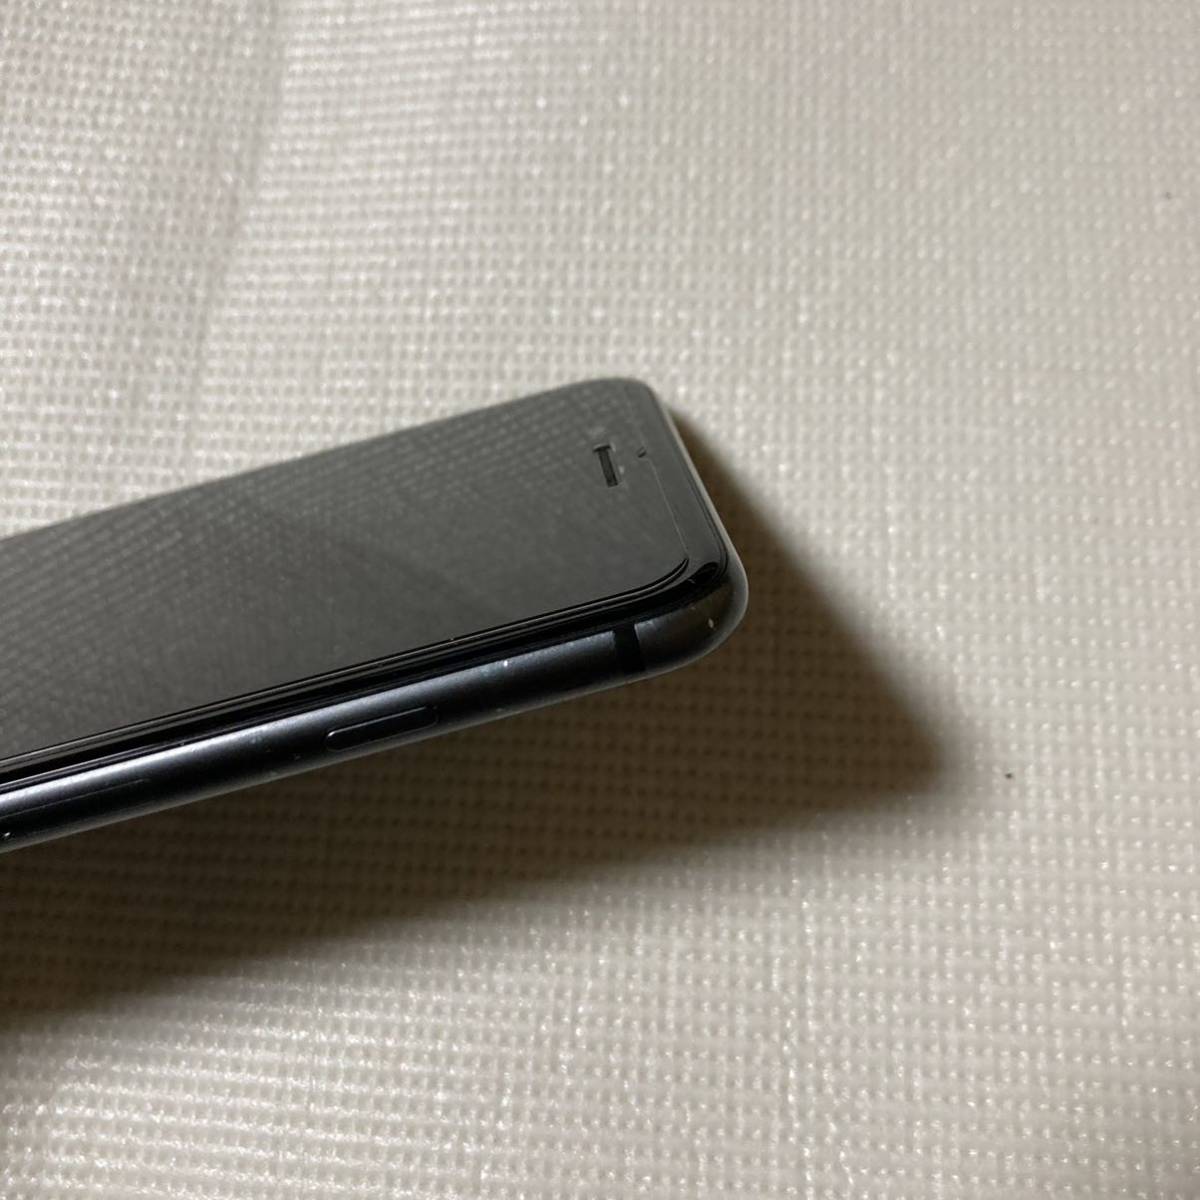 送料無料 SIMフリー iPhone8 Plus 256GB スペースグレー バッテリー最大容量100% SIMロック解除の画像5